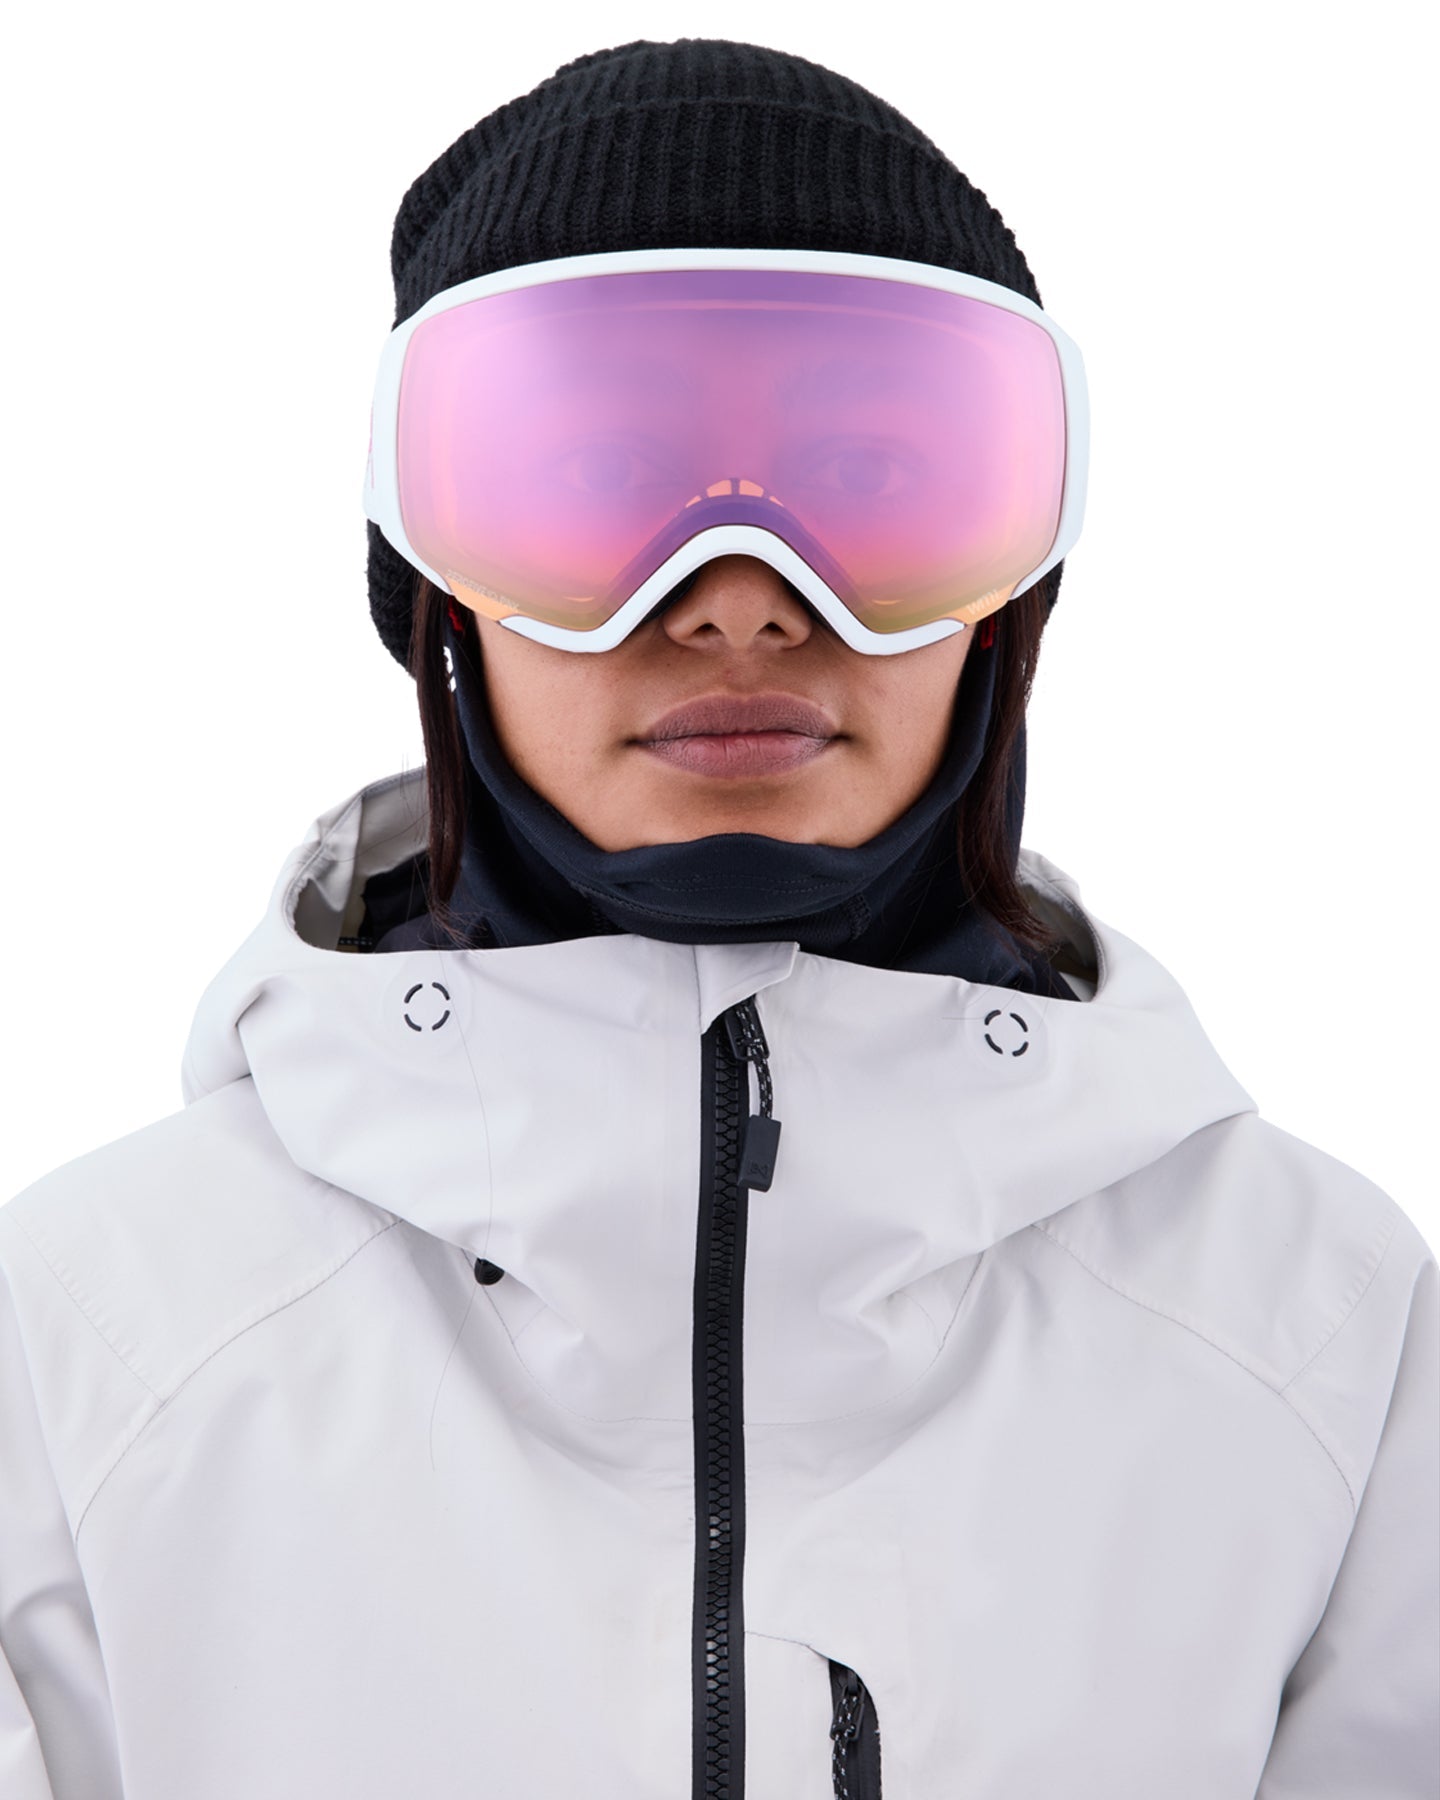 Anon WM1 Low Bridge Fit Snow Goggles + Bonus Lens + MFI - White / Perceive Cloudy Pink Women's Snow Goggles - Trojan Wake Ski Snow